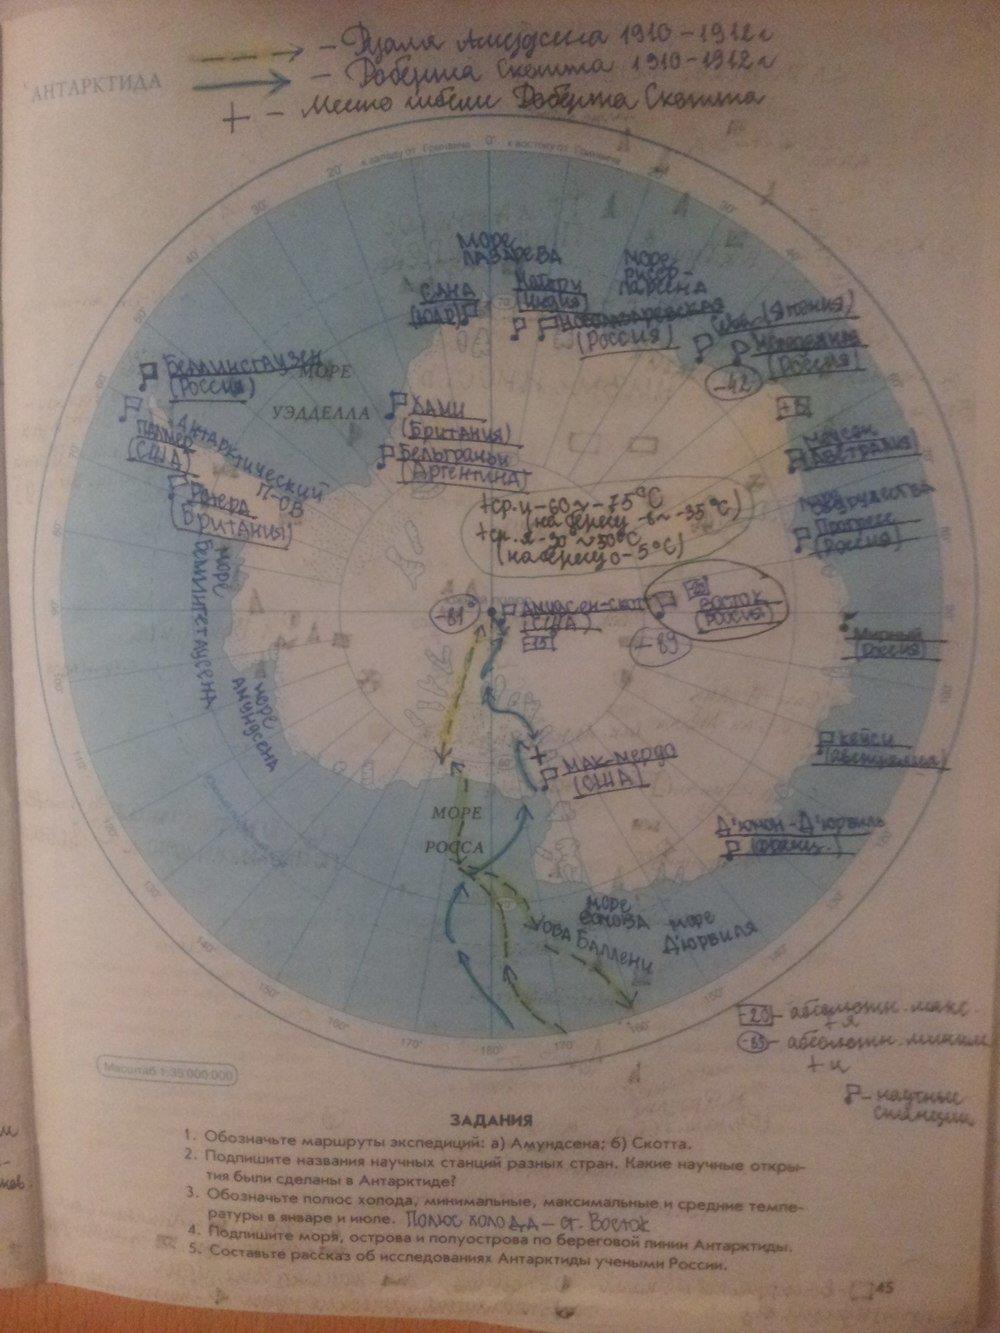 География 7 класс стр 38. Гдз рабочая тетрадь по географии 7 класс Сиротин Антарктида. Контурные карты Антарктида 7 класс гдз. Контурная карта по географии 7 класс Антарктида гдз. Контурная карта Антарктиды.